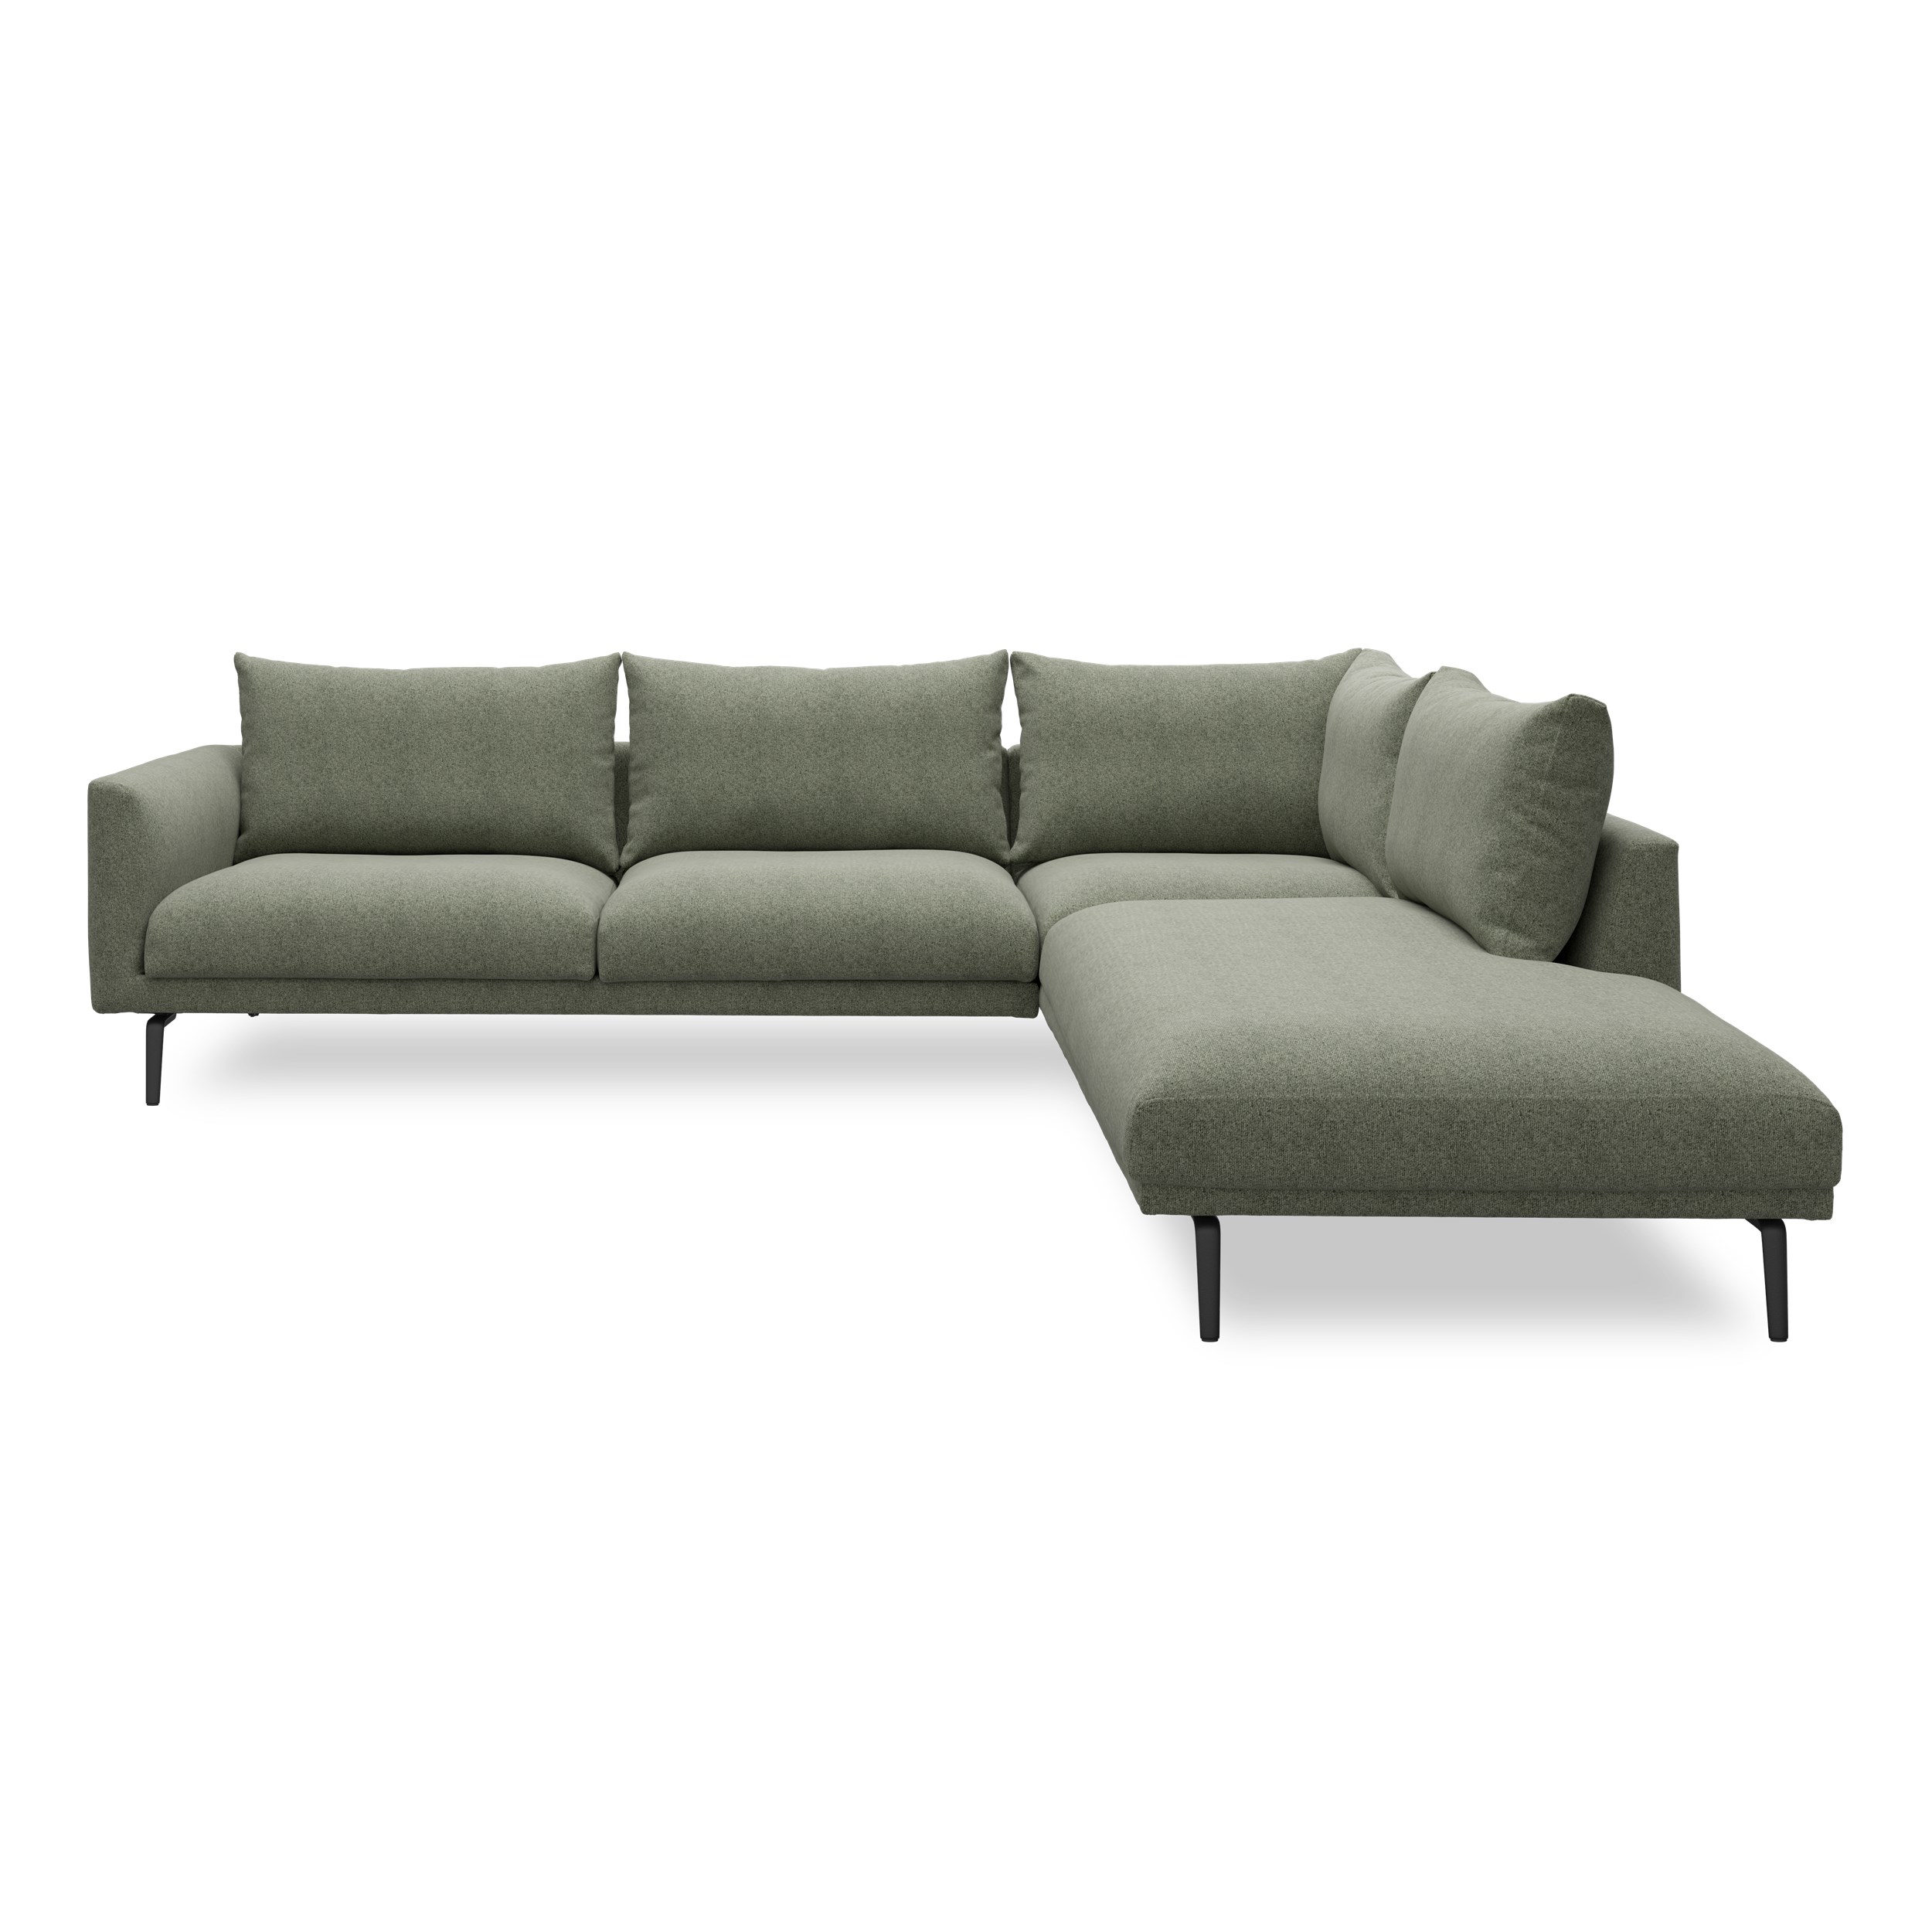 Hallsberg högervänd soffa med divan 